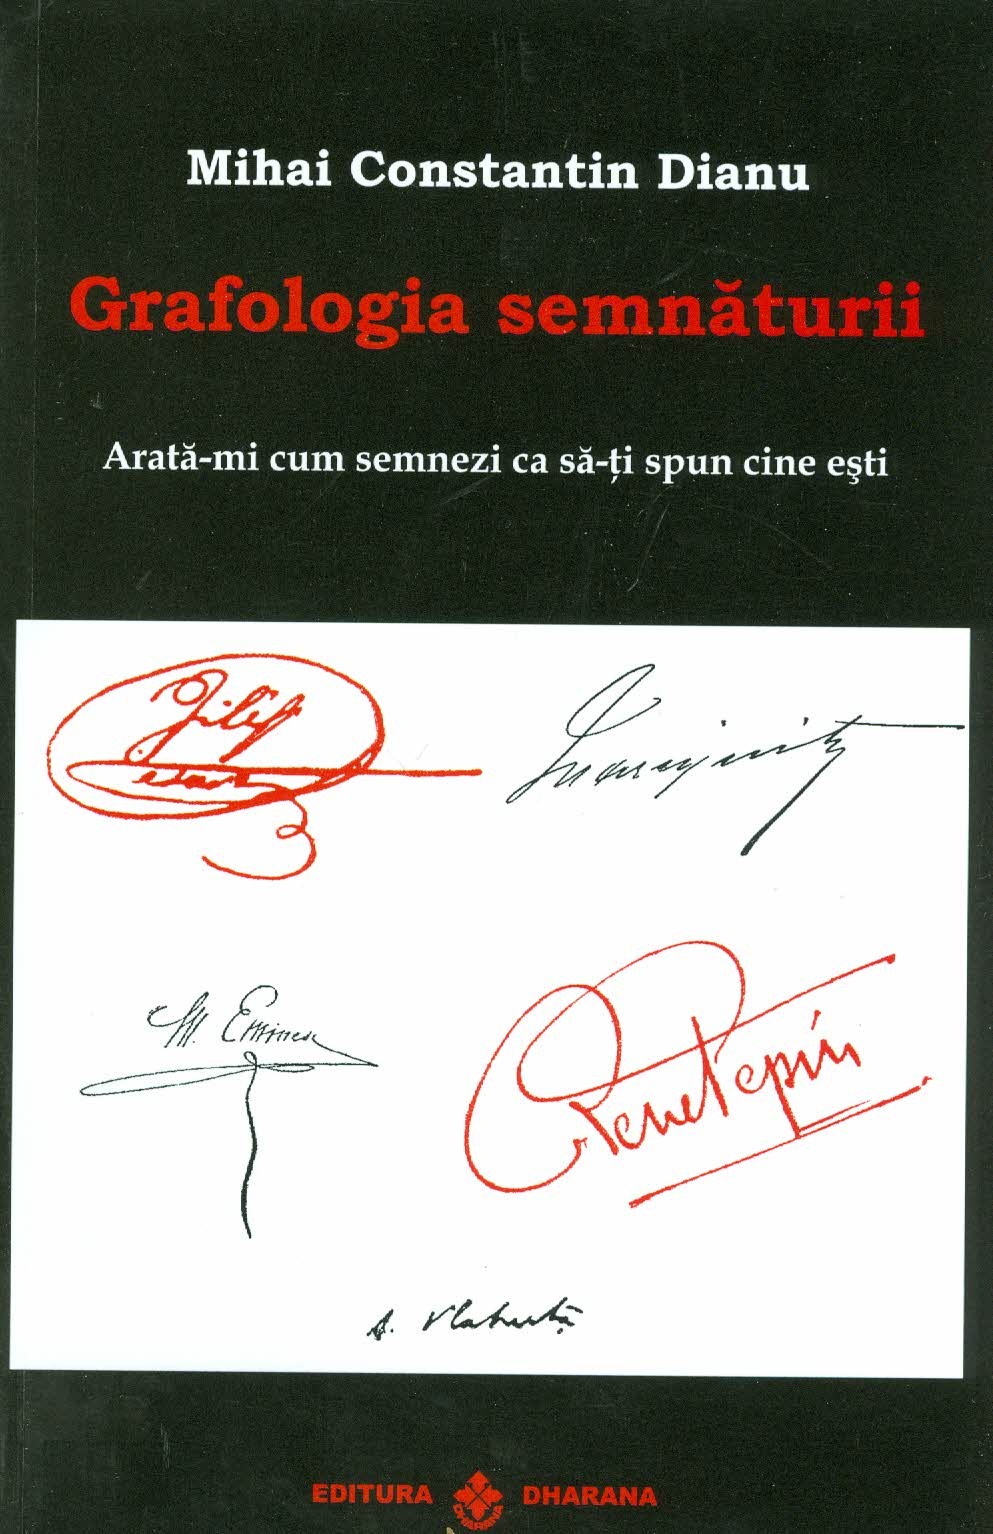 Grafologia semnaturii | Mihai Constantin Dianu carturesti.ro